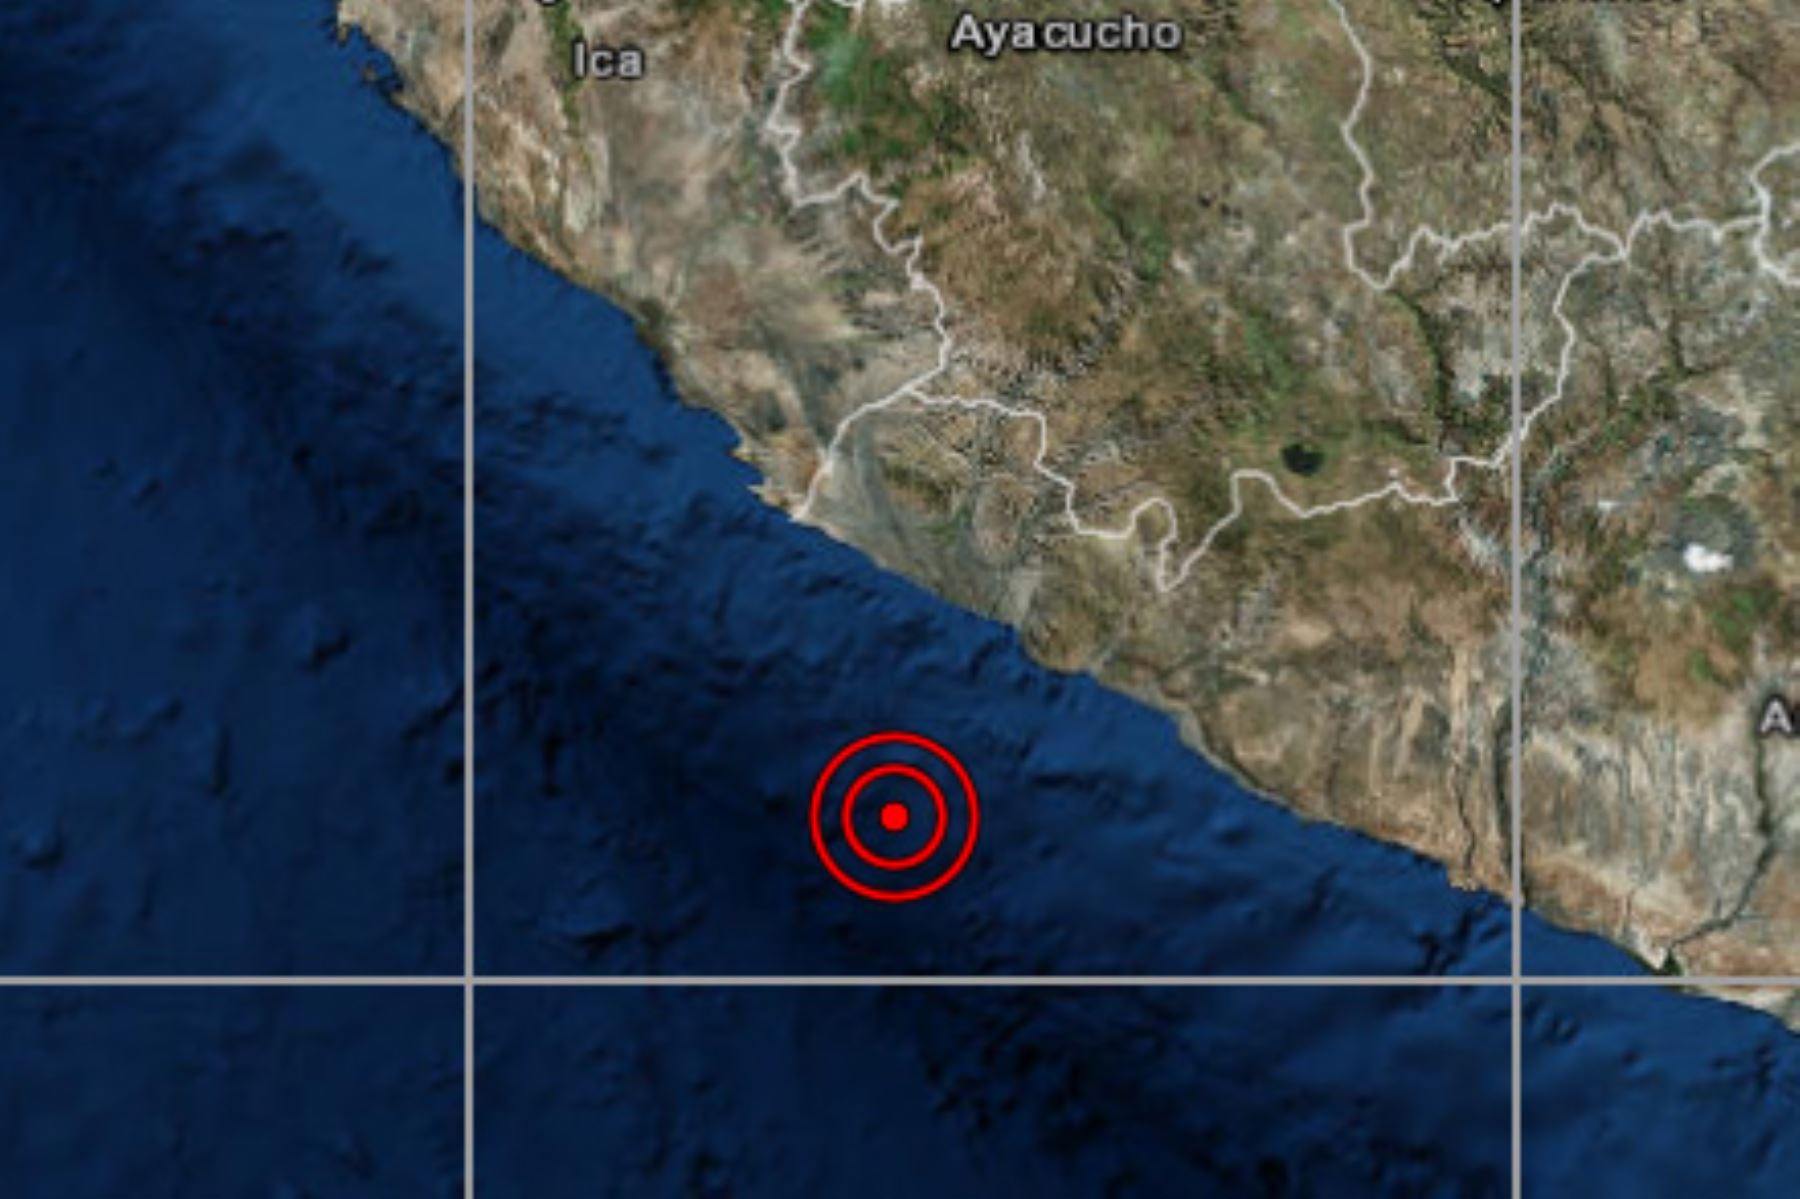 Un sismo de magnitud 4.6 se registró esta tarde en el distrito de Yauca, región Arequipa.